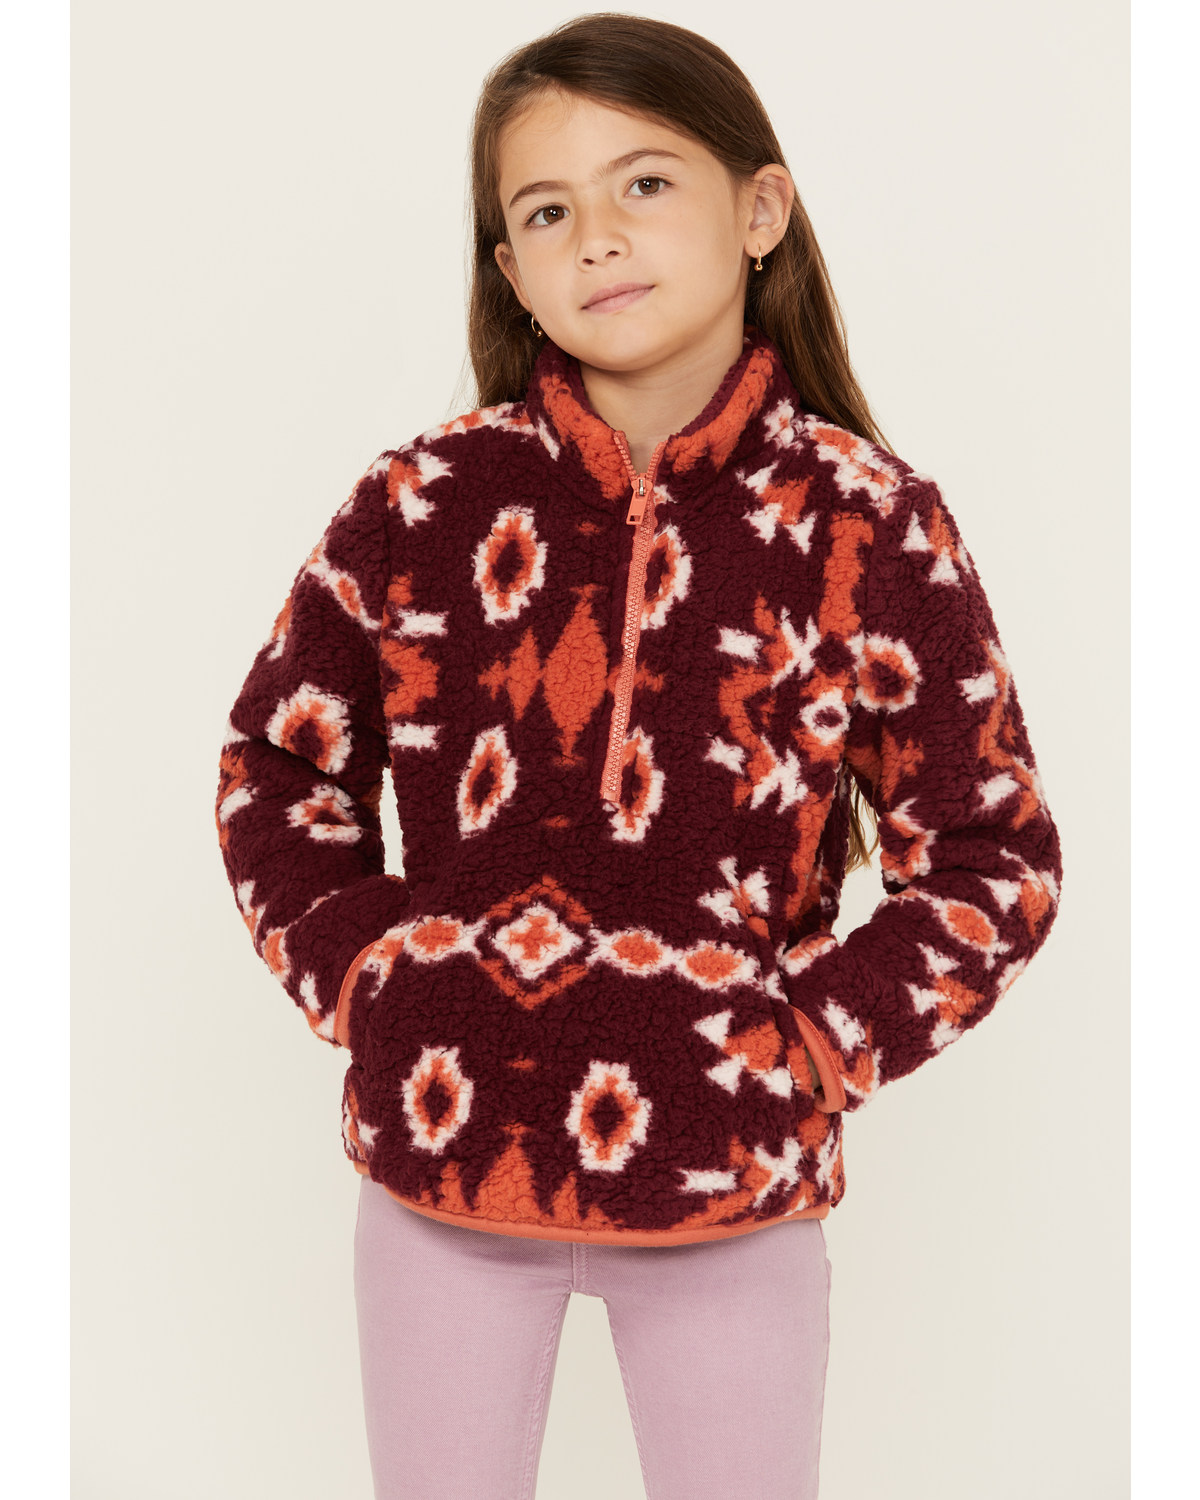 Wrangler Girls' Southwestern Print Sherpa Pullover